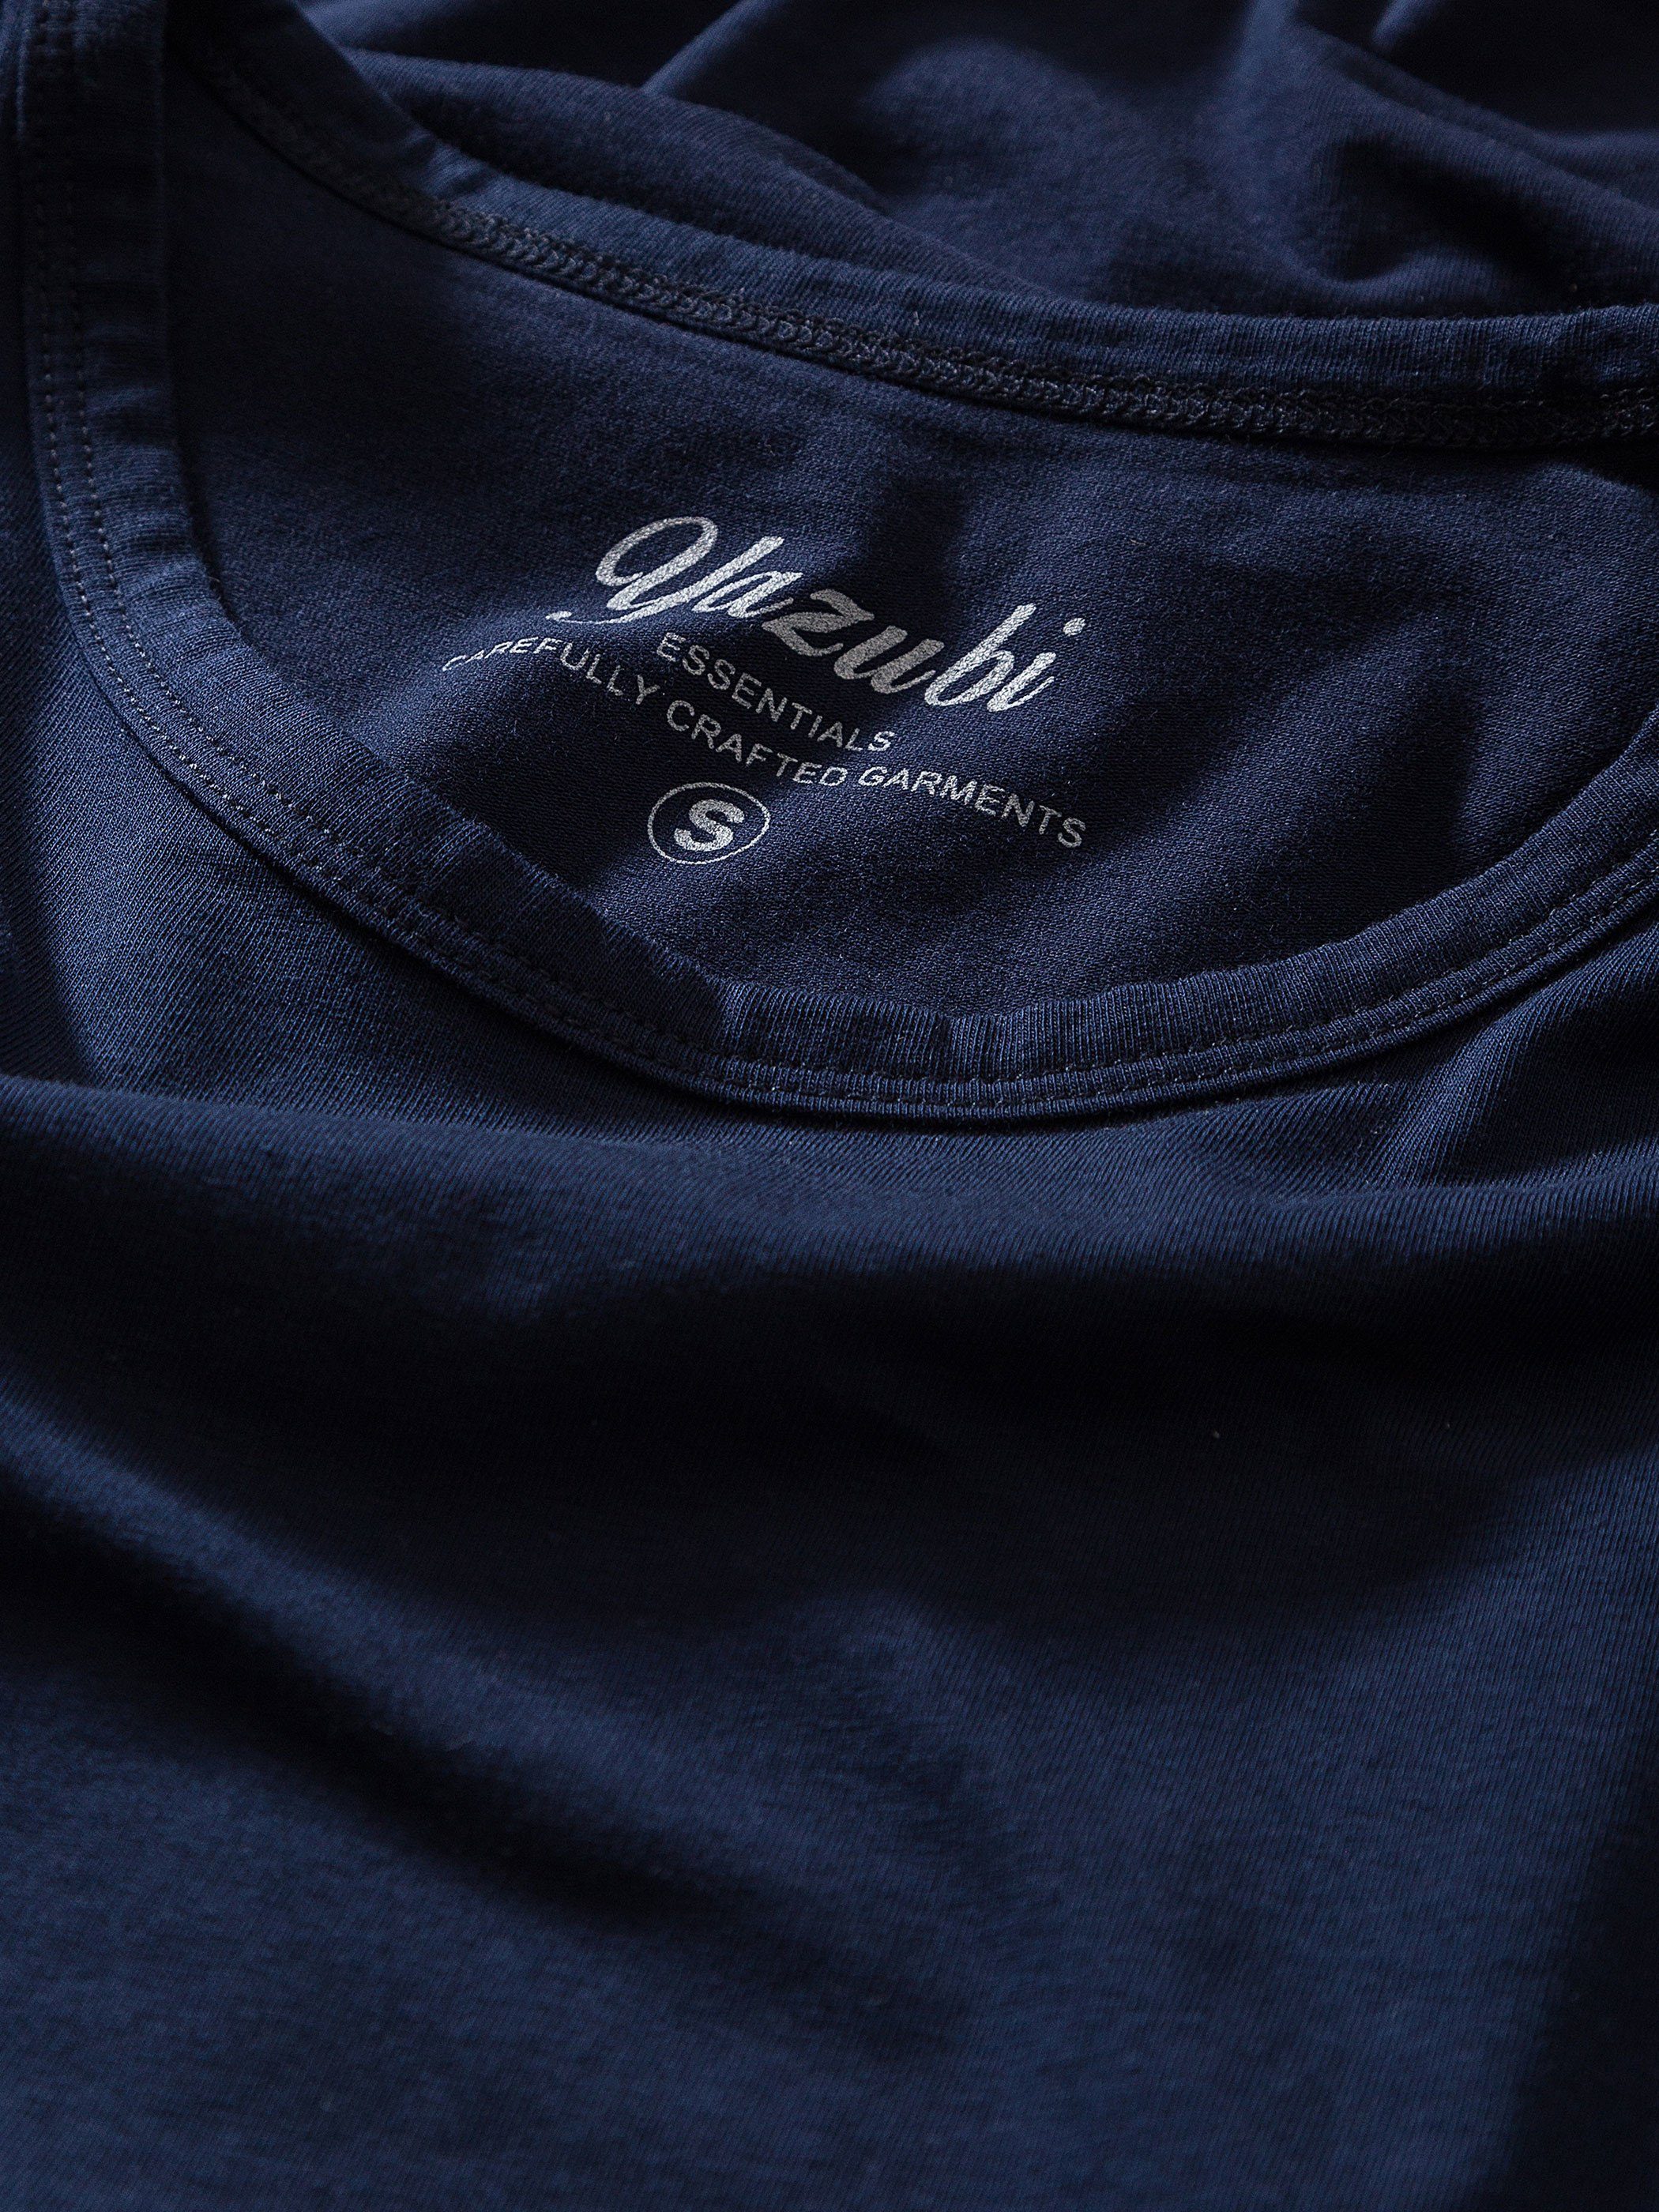 sapphire Yazubi modernes Rundhalsshirt Basic Yazubi Tee Neck Blau Crew 194020) - T-Shirt (1-tlg) Mythic (dark